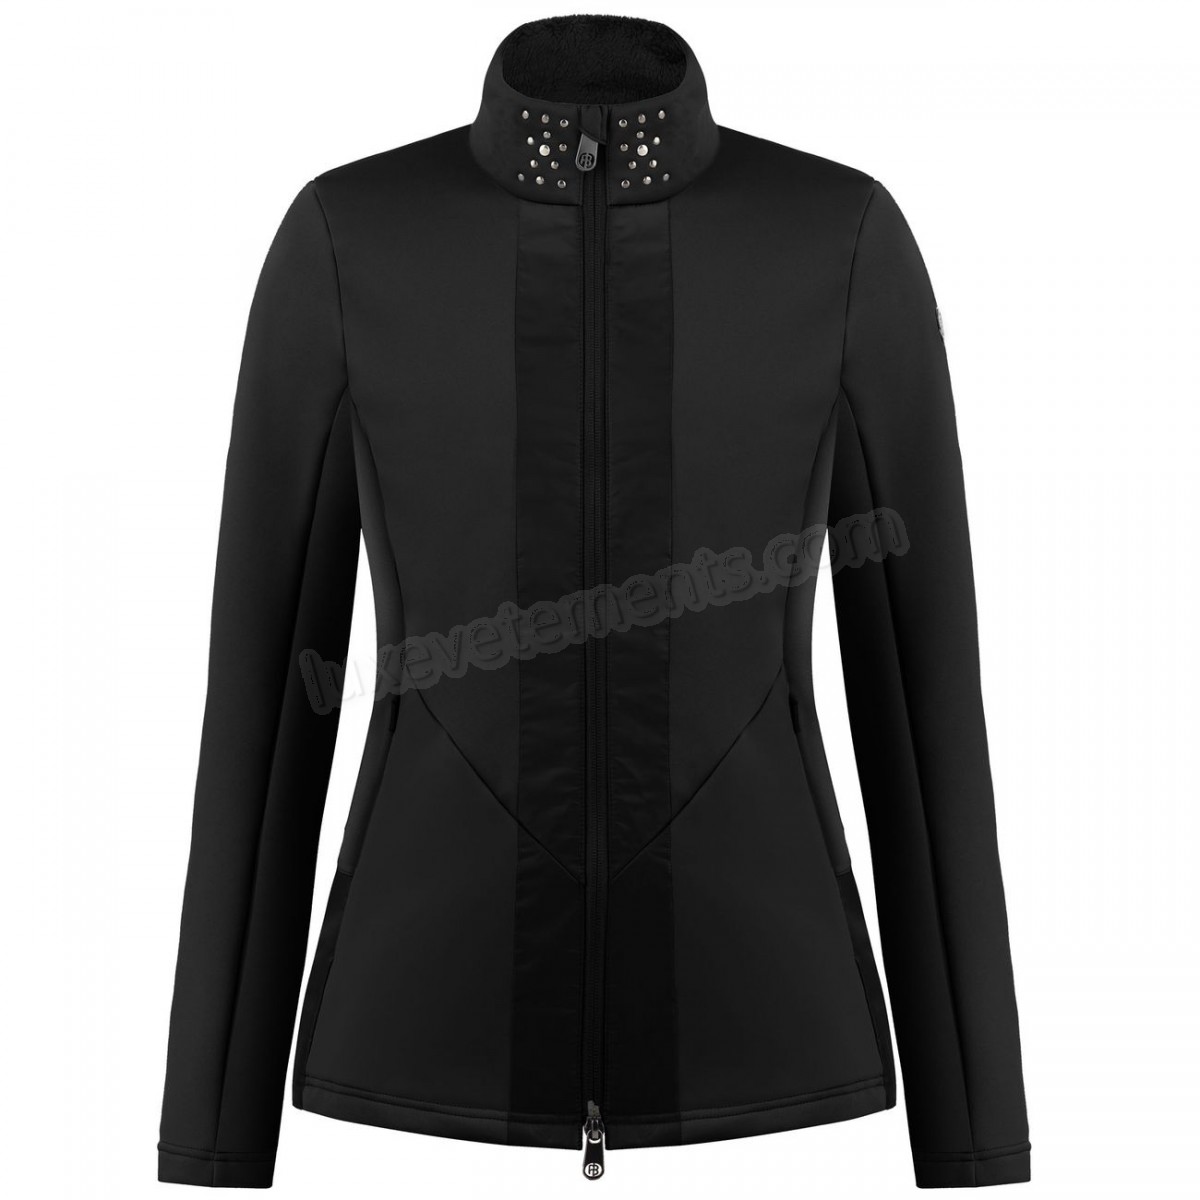 Poivre Blanc-Sports d'hiver femme POIVRE BLANC Veste En Polaire Poivre Blanc Hybrid Stretch Fleece Jacket 1702 Black Femme Vente en ligne - -2